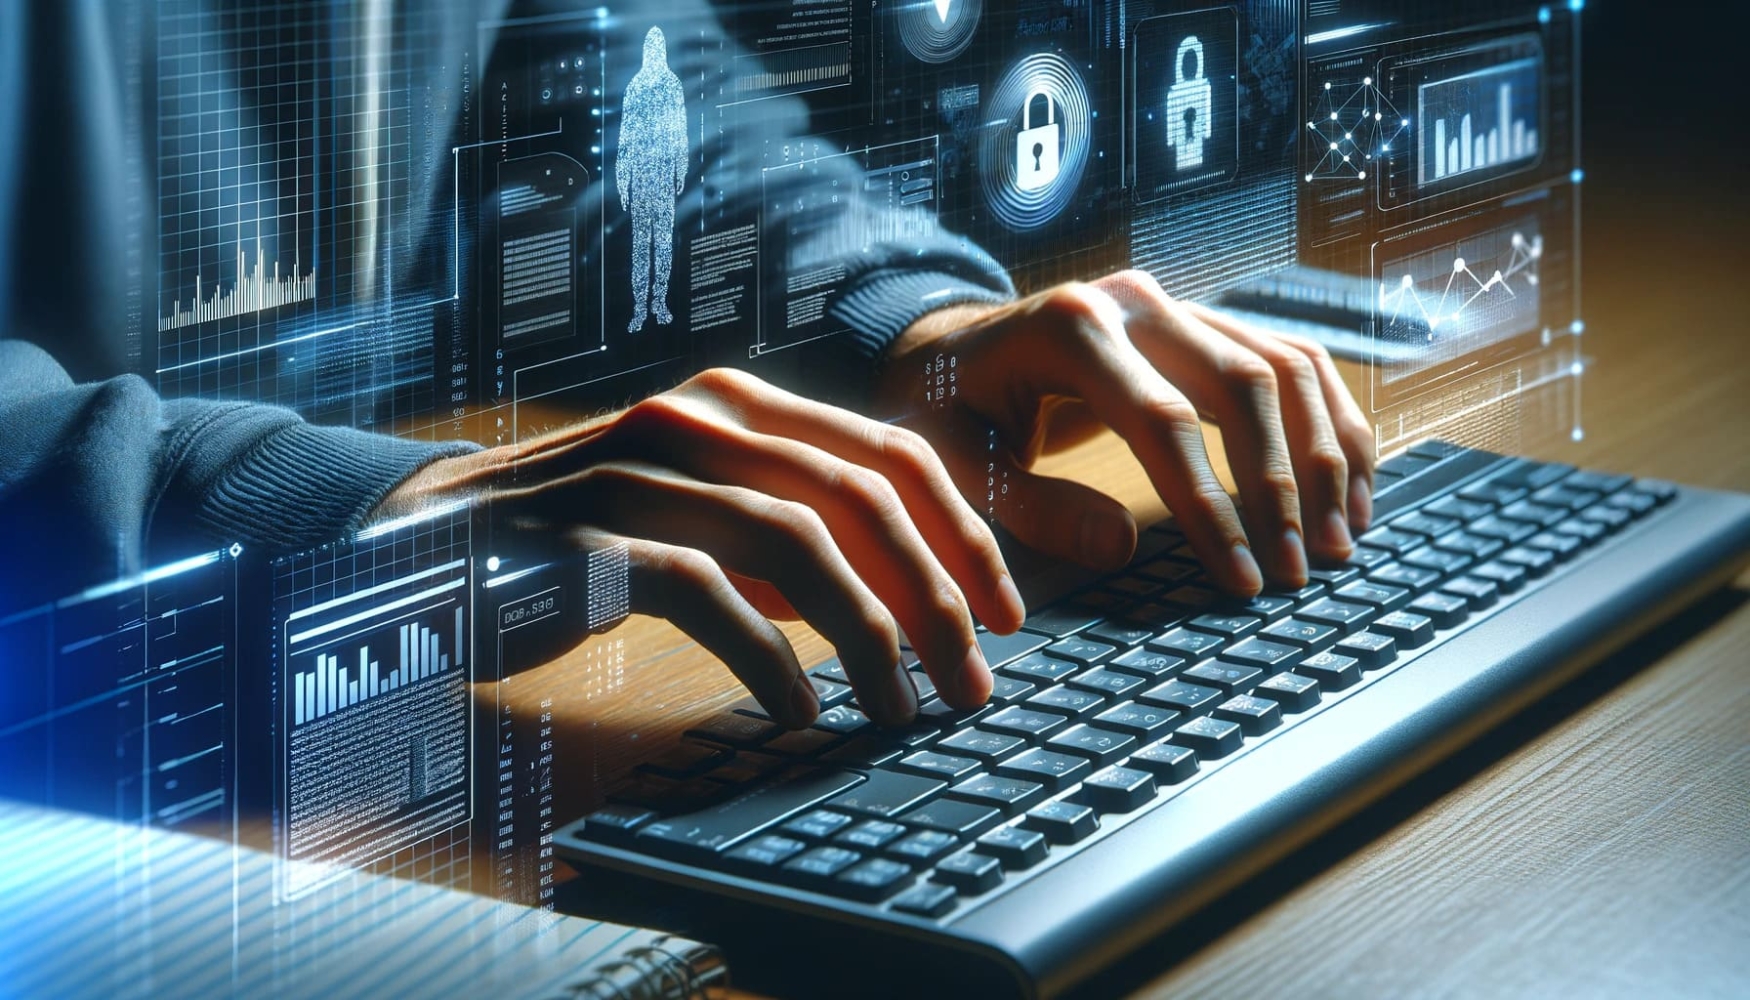 Computergrafik eines Mannes, der auf einer Tastatur tippt, mit einem futuristischen Hintergrund hinter ihm und einem digitalen Bild einer Hand auf der Tastatur